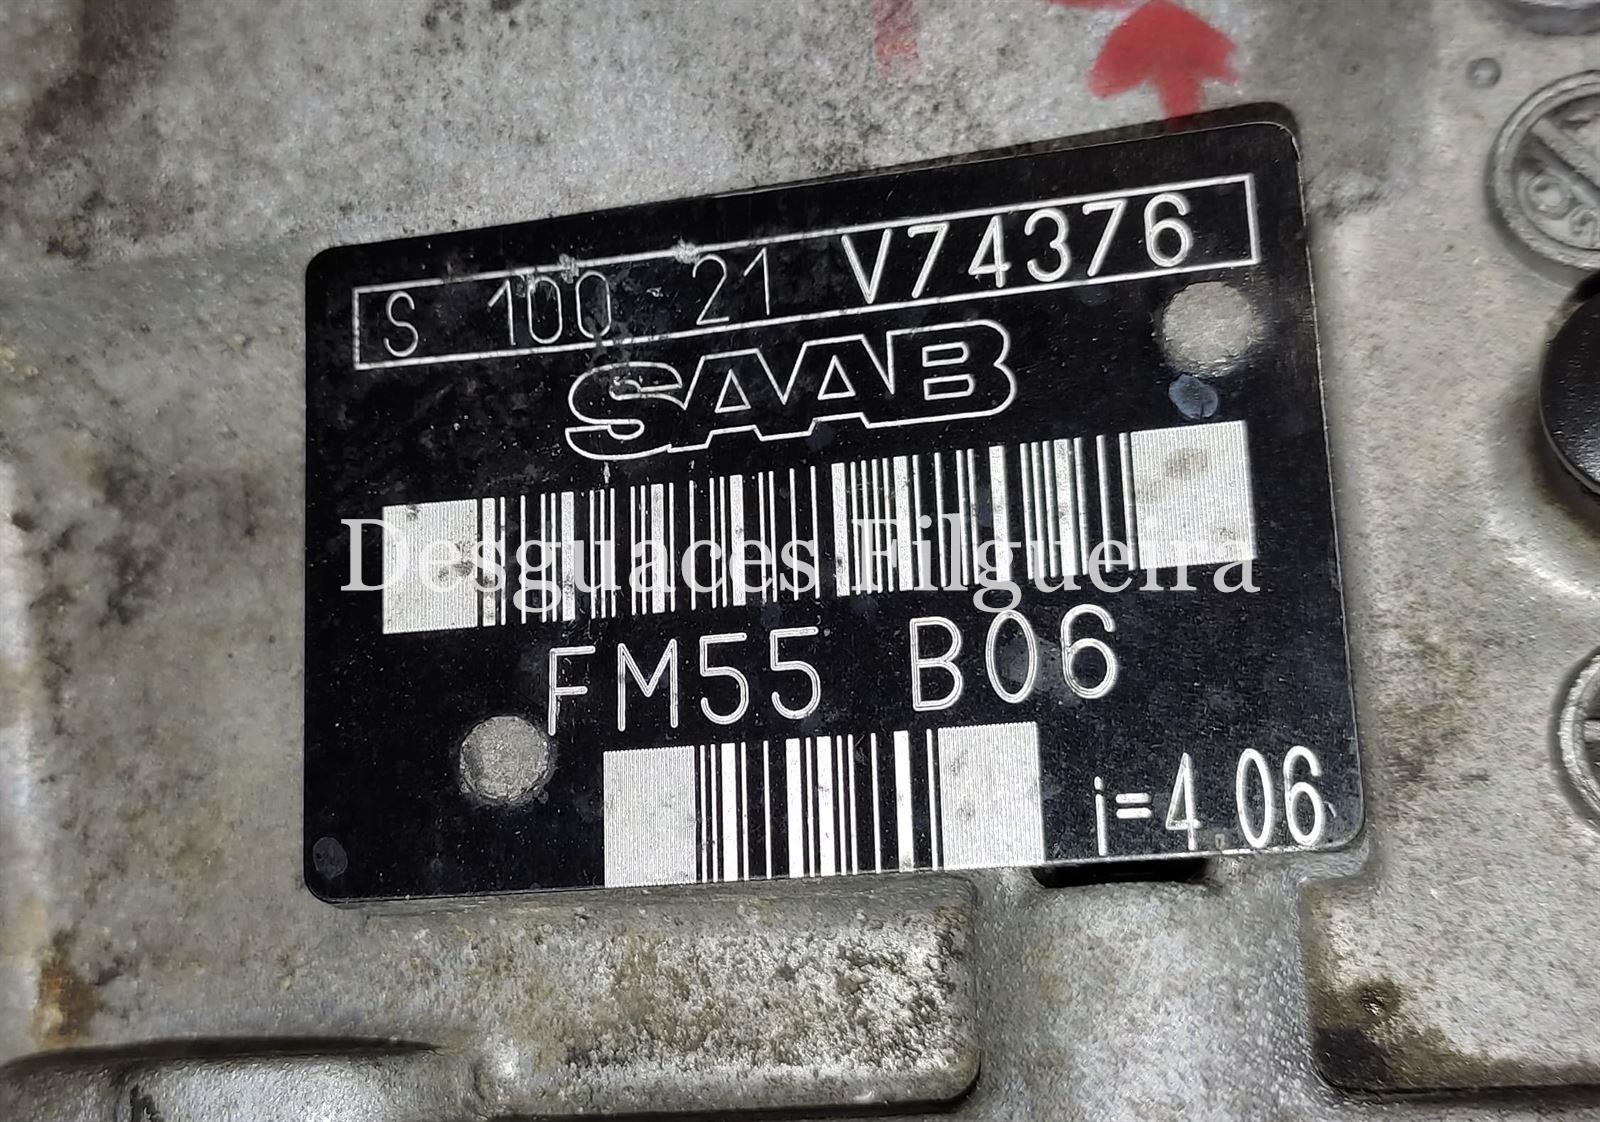 Caja de cambios Saab 9-5 2.2 TID FM55 B06 S100 21 i: 4,06 - Imagen 5